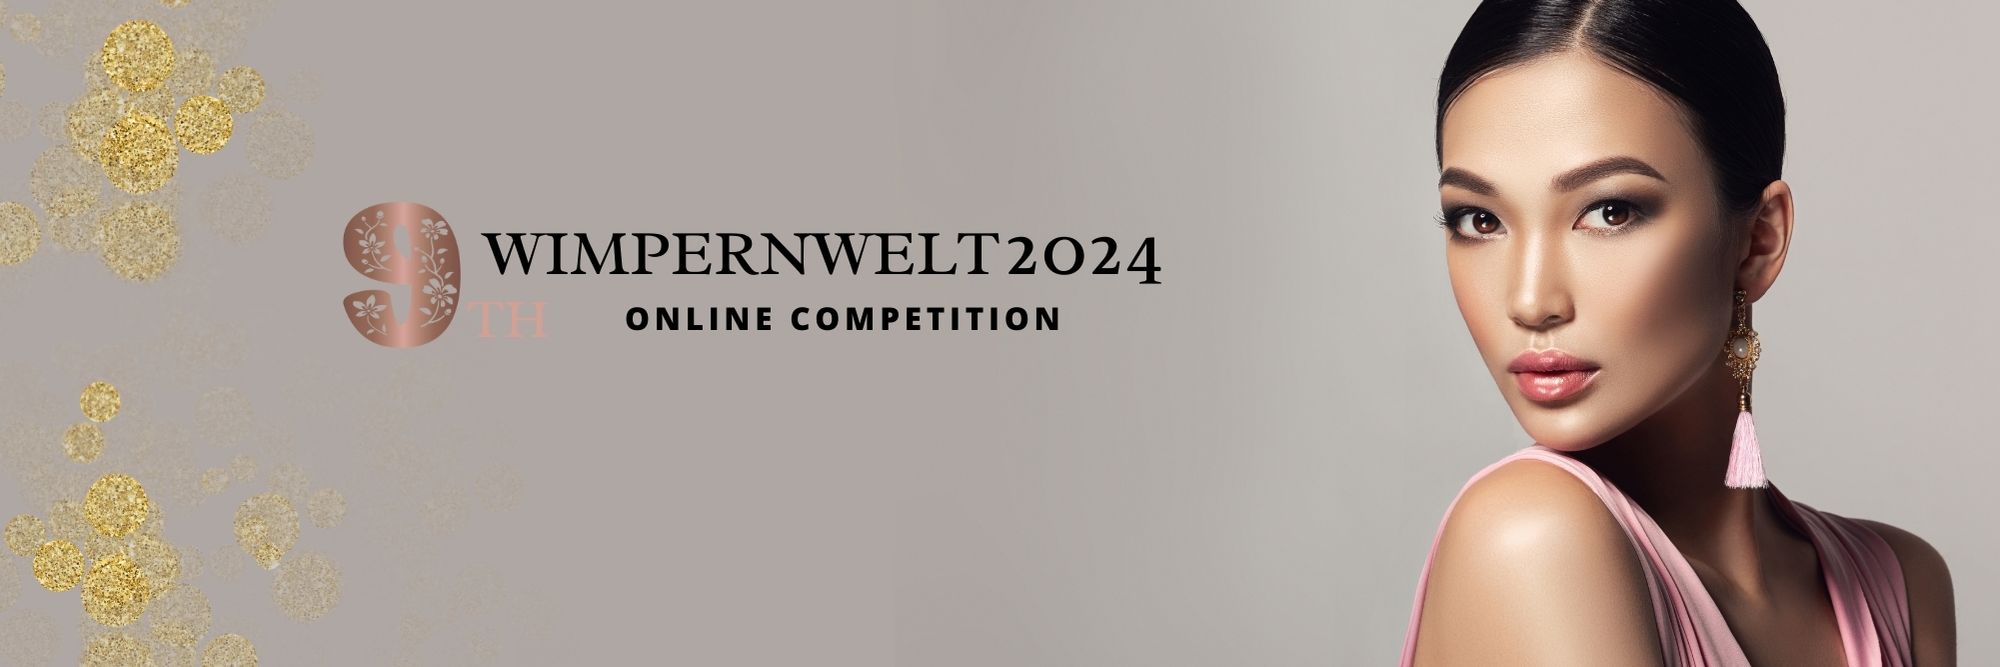 Wimpernwelt Banner Registrierung